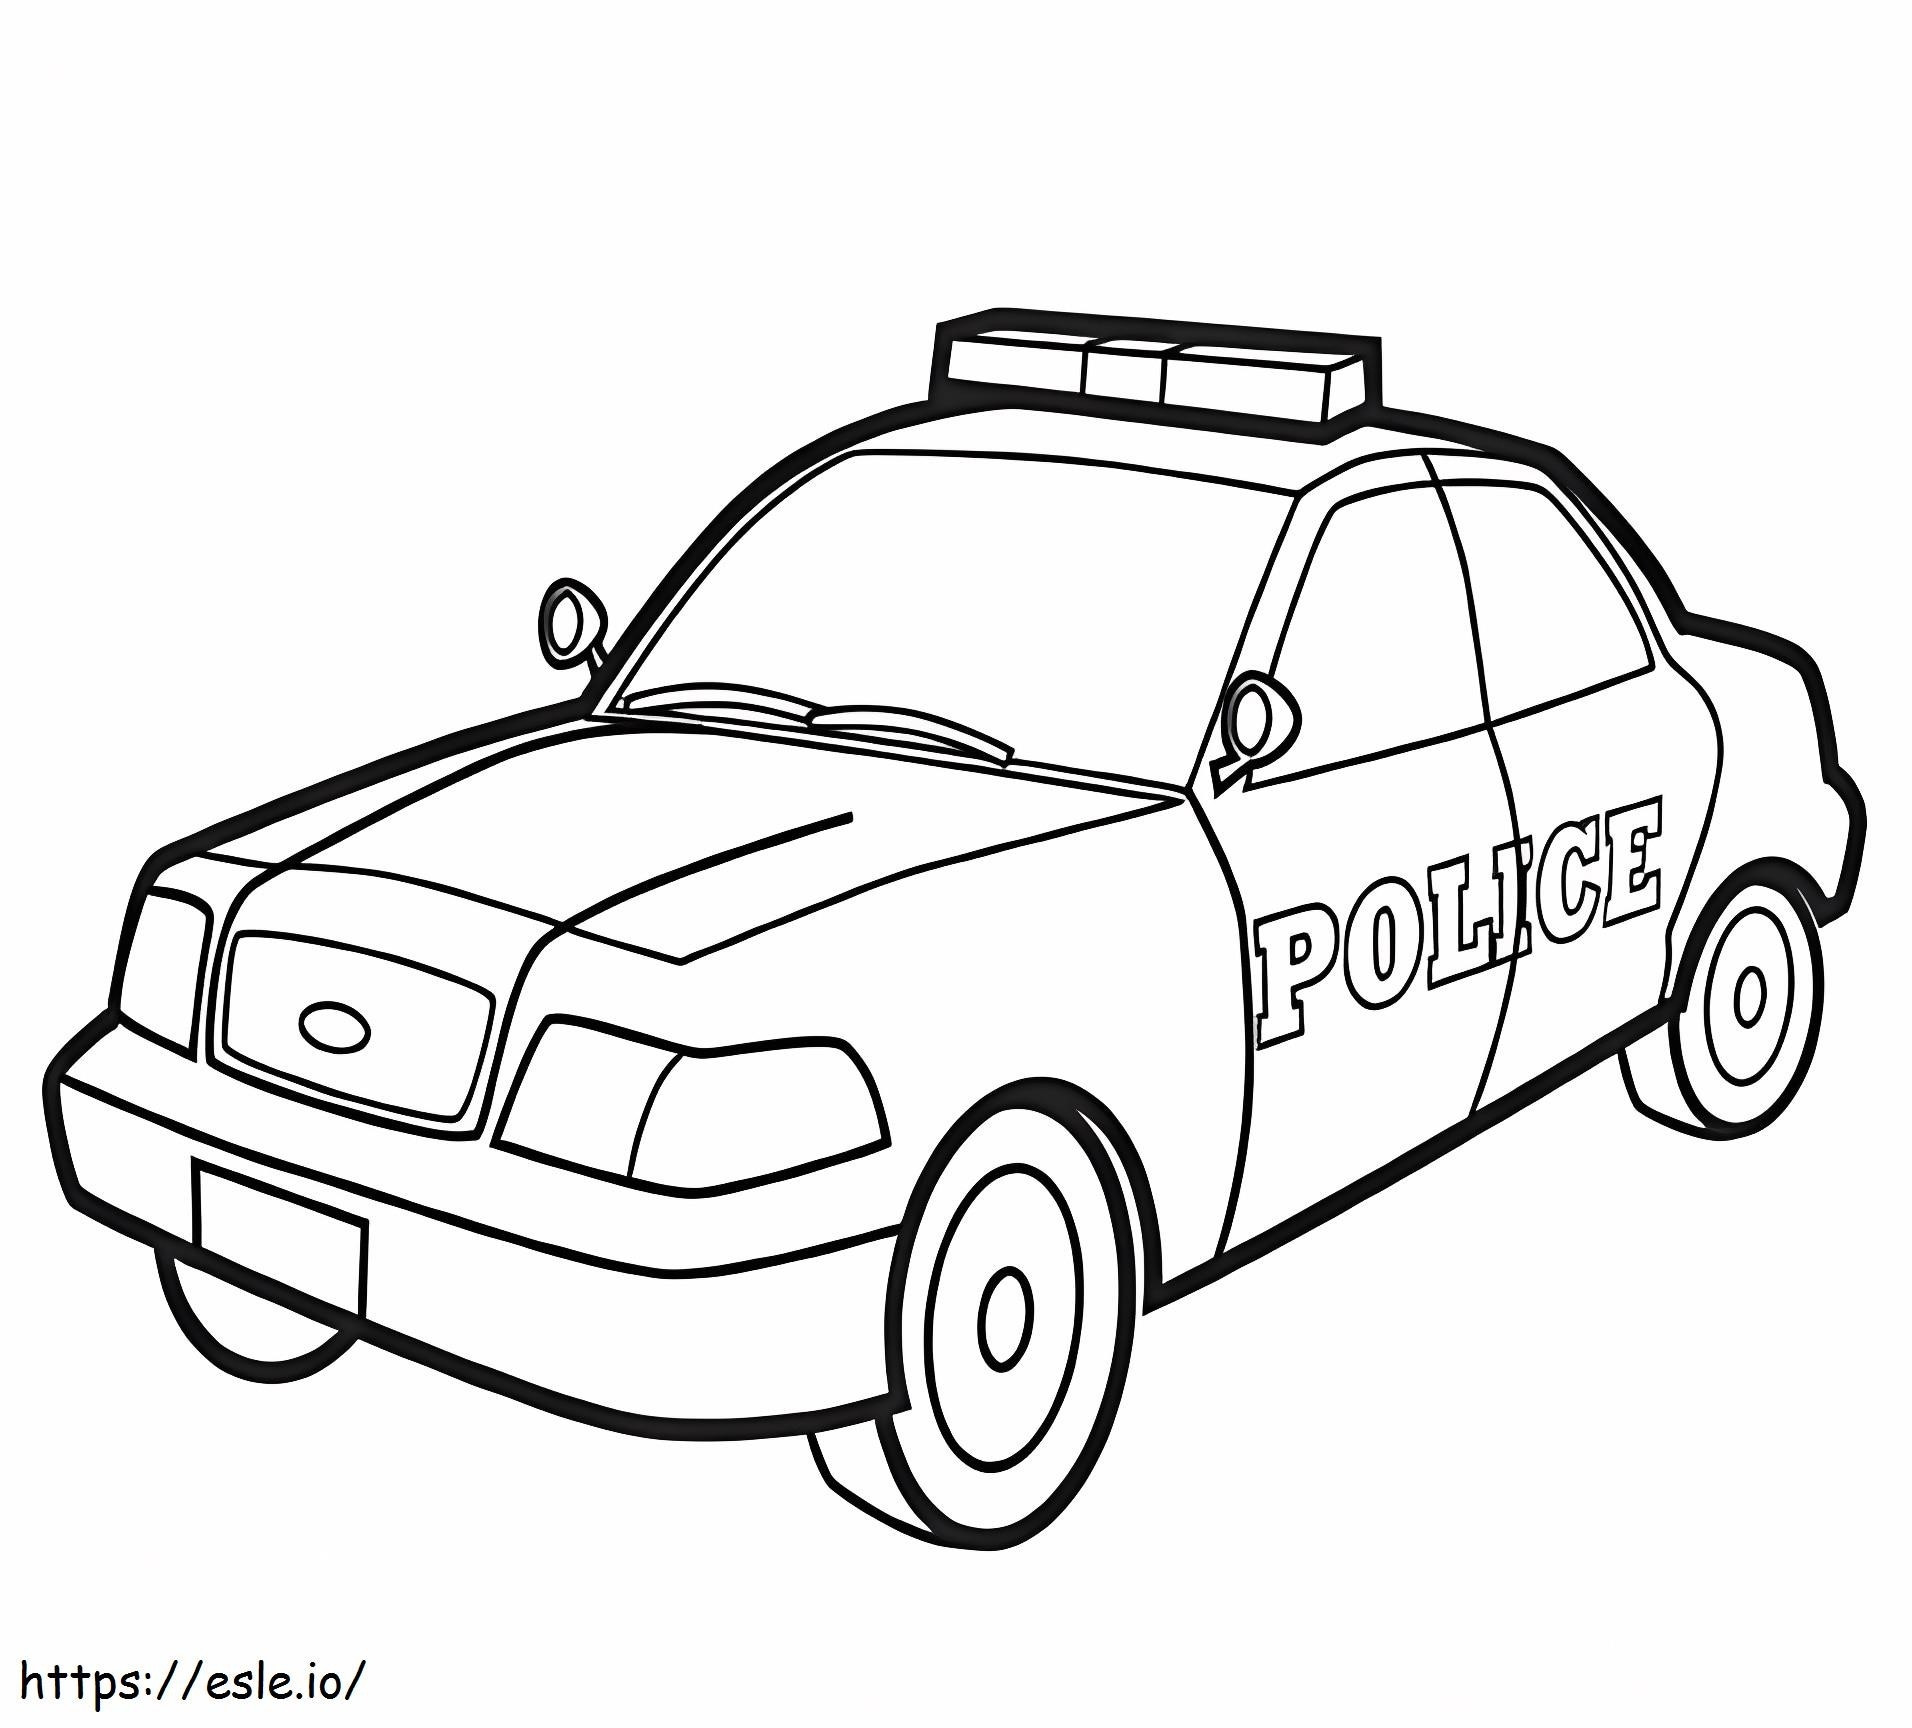 Auto della polizia stampabile gratuitamente da colorare